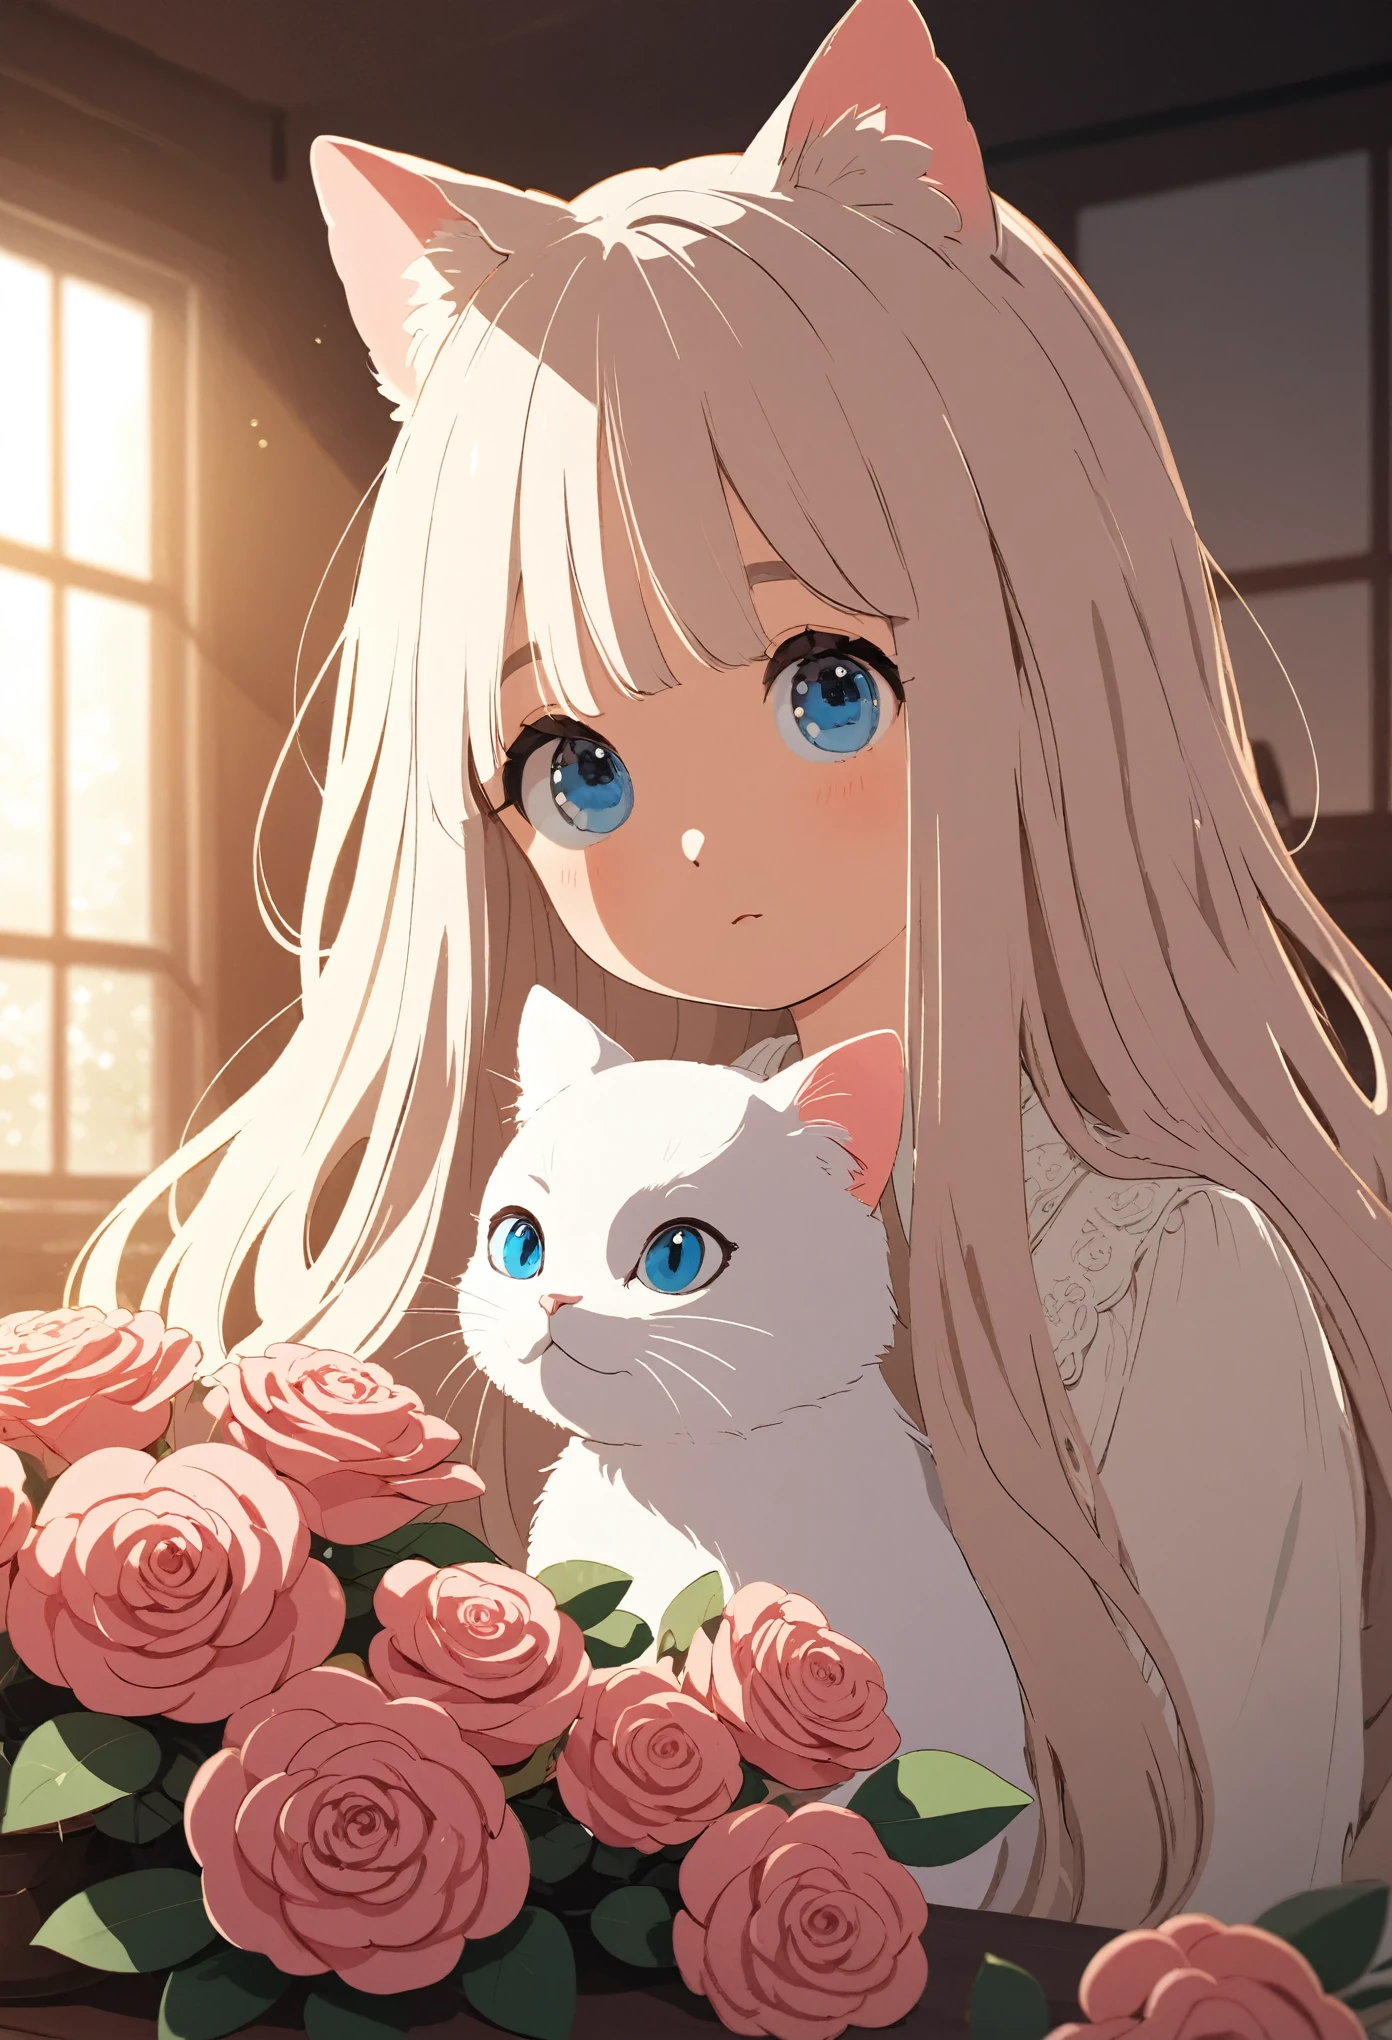 一只蓝眼睛的白色长毛猫, 坐在桌子上，旁边是花瓶里的粉红玫瑰, 正面视图, 整个身体的特写镜头, 在自然光下, 带有暖色调, 在室内环境中, 配以柔和的灯光, 细节清晰, 卡通风格, 宫崎骏的风格.